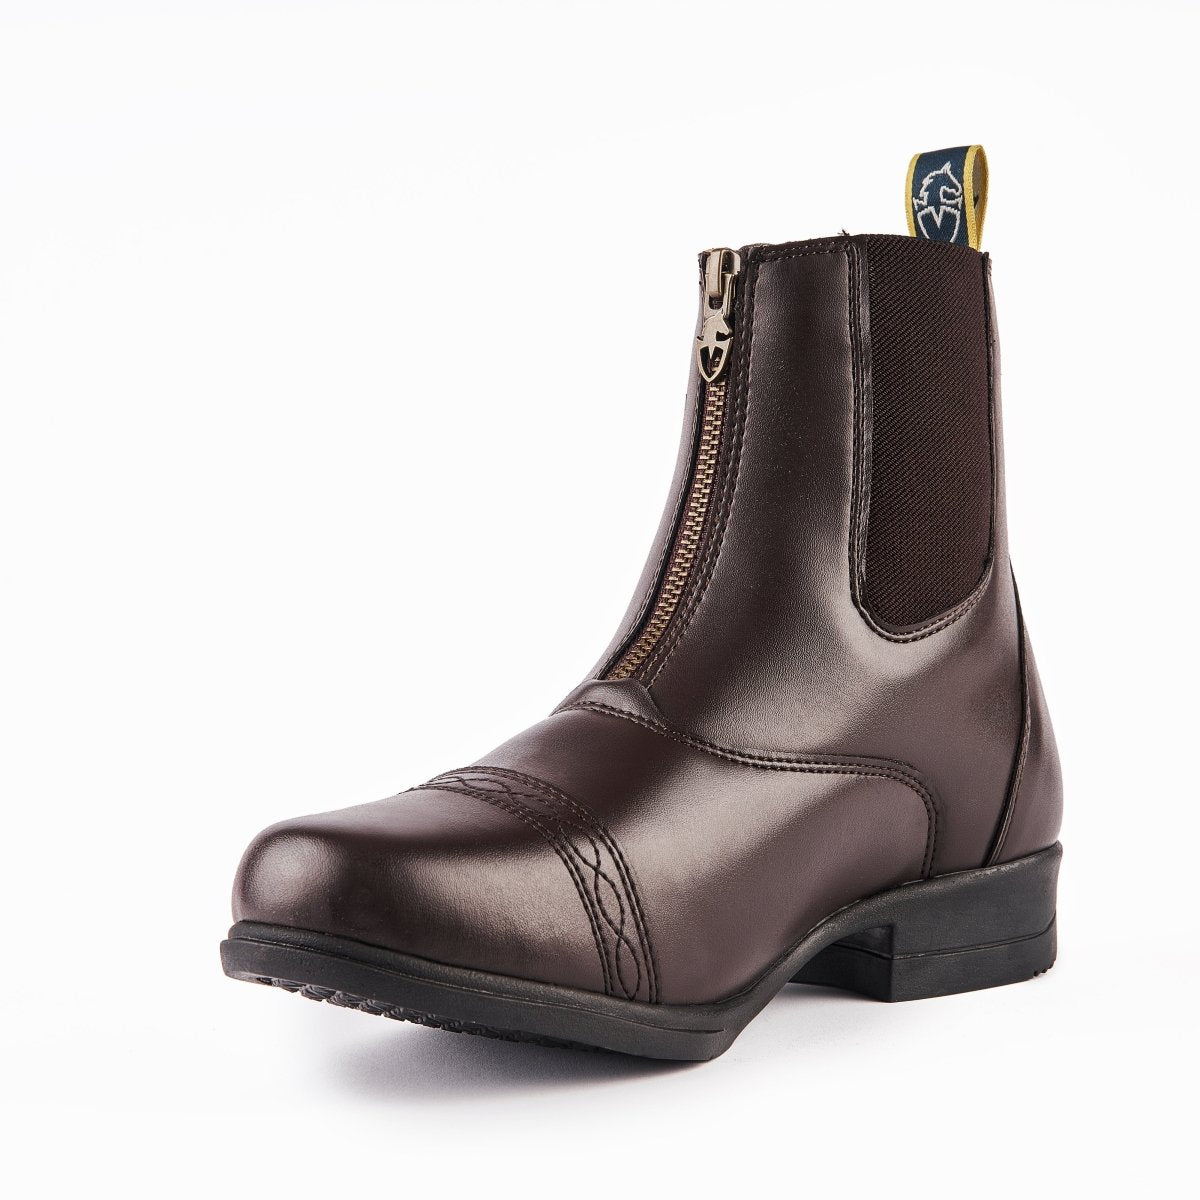 Moretta Clio Paddock Boots - Brown - 10/28